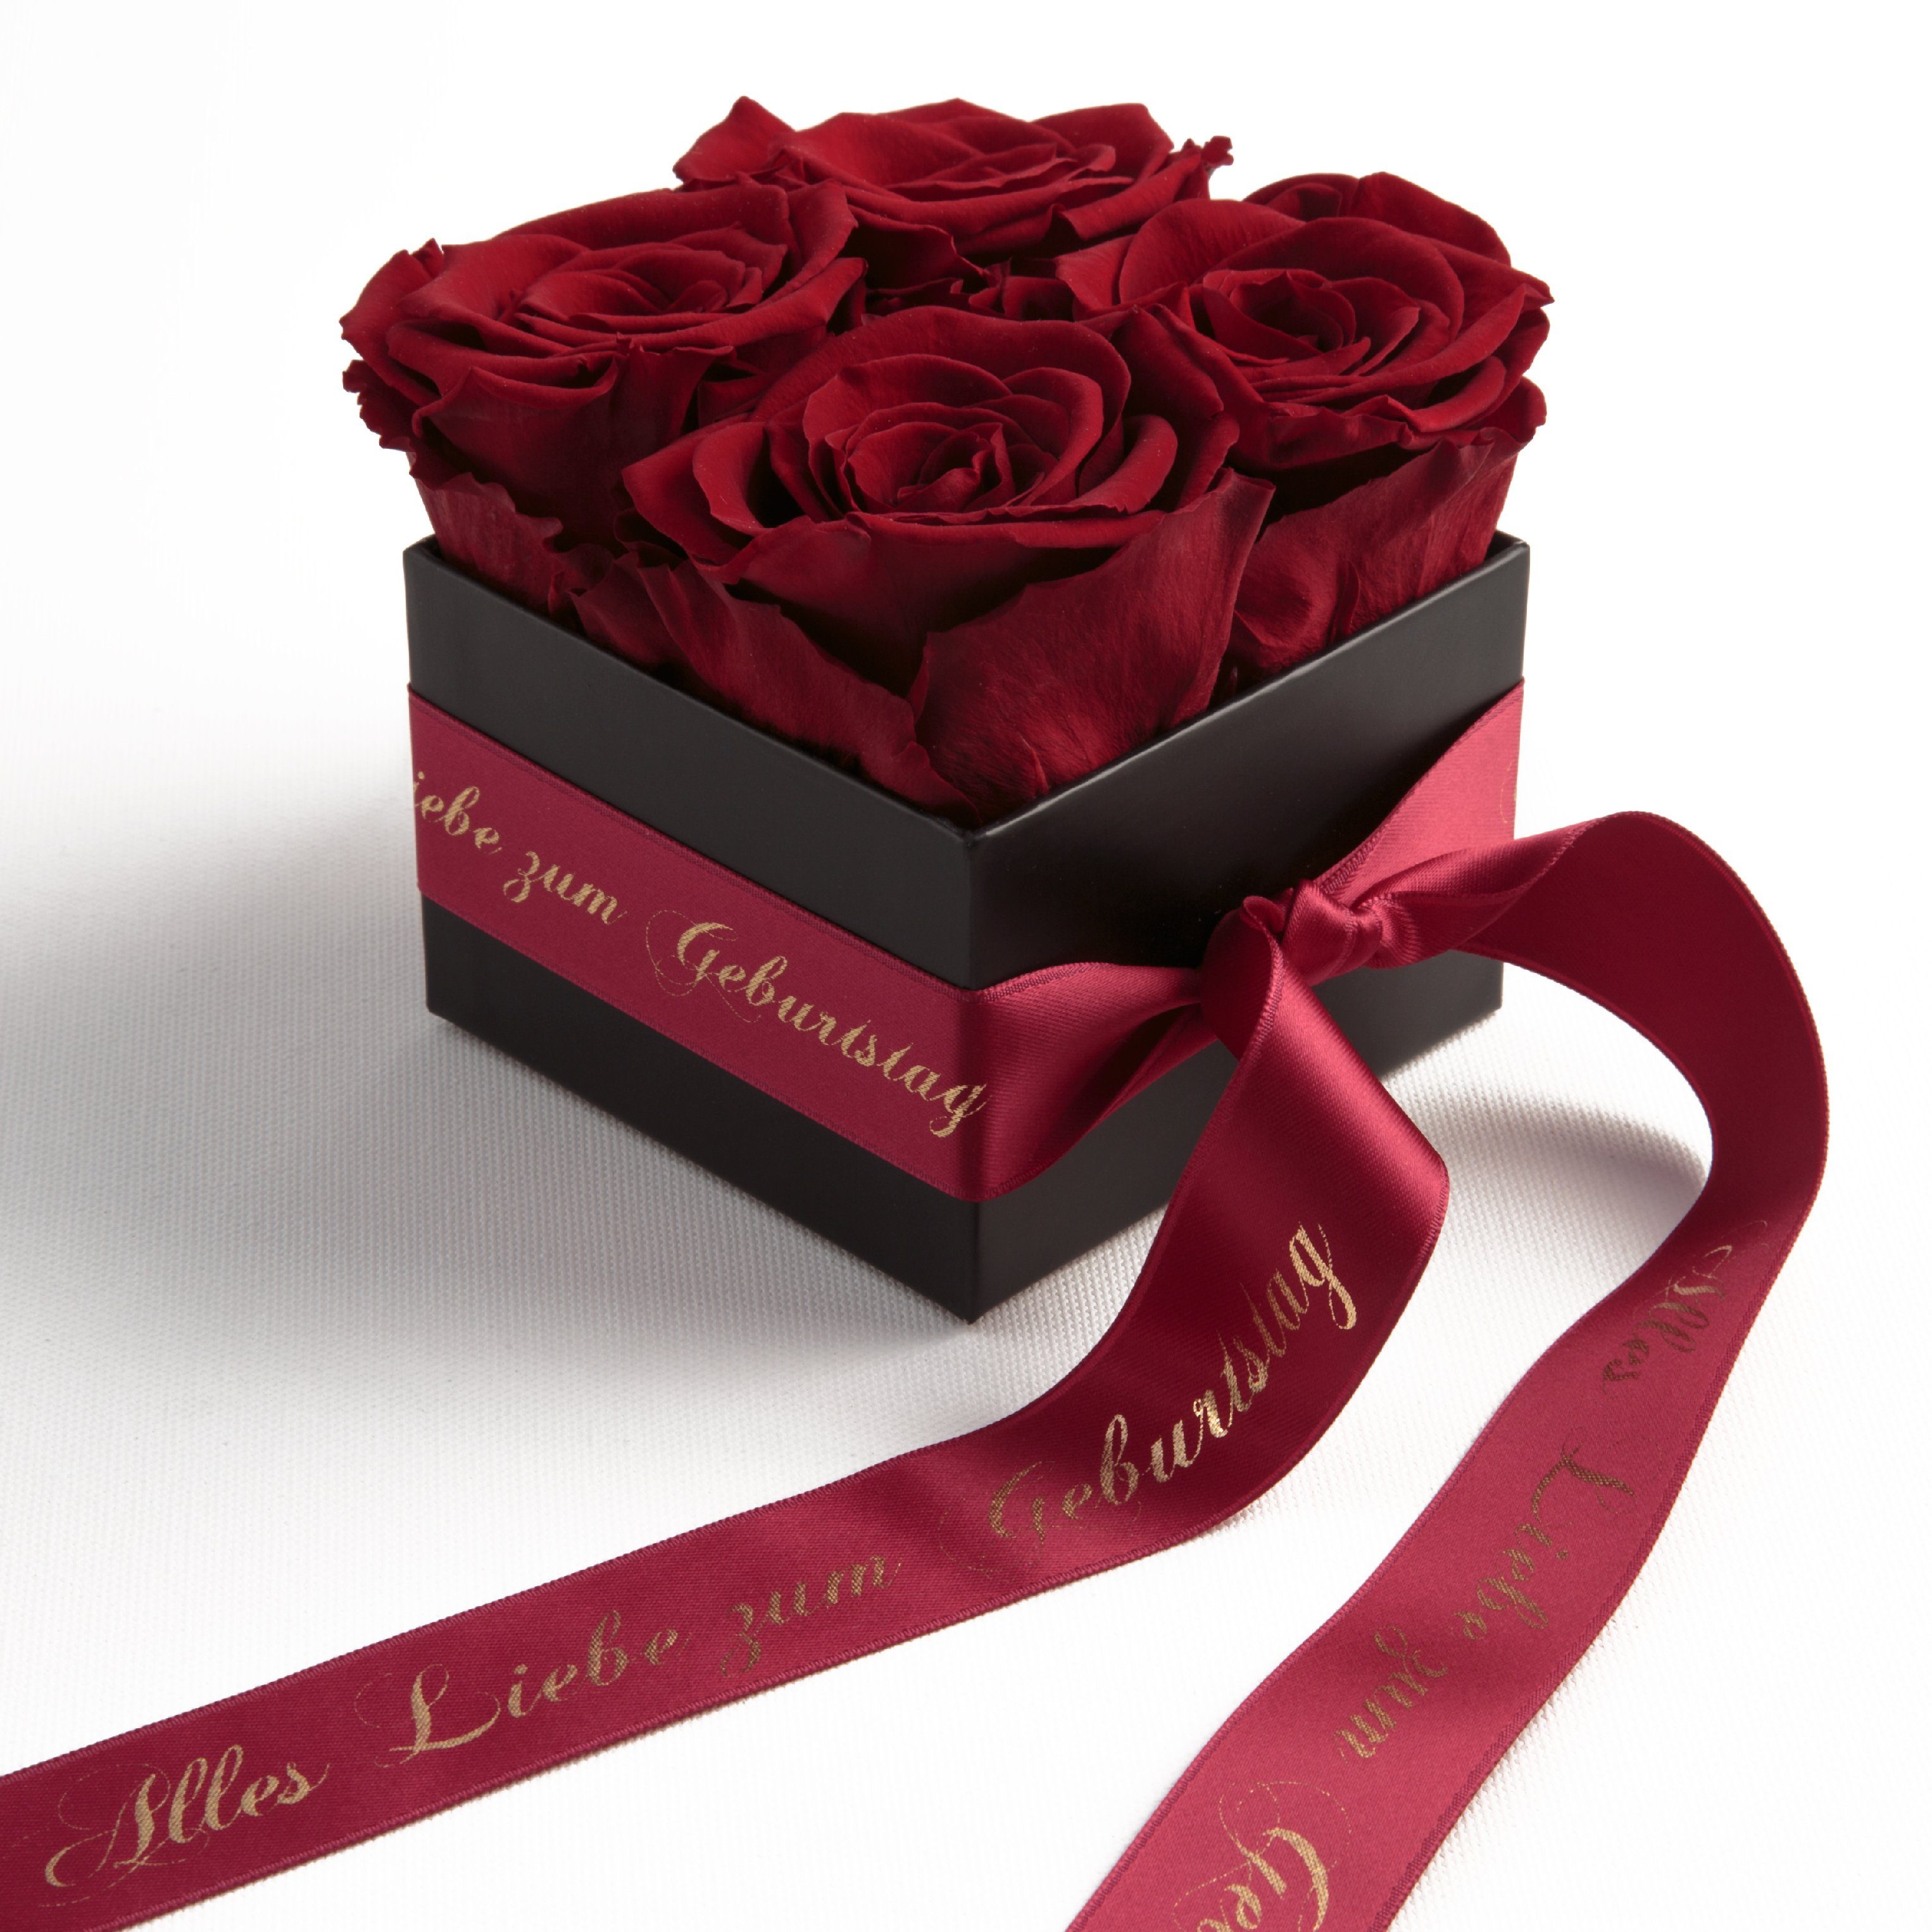 Goldene Rose Rosenbox Flower Blumen Box MIT GRAVUR Jahrestag Hochzeit Geschenk 